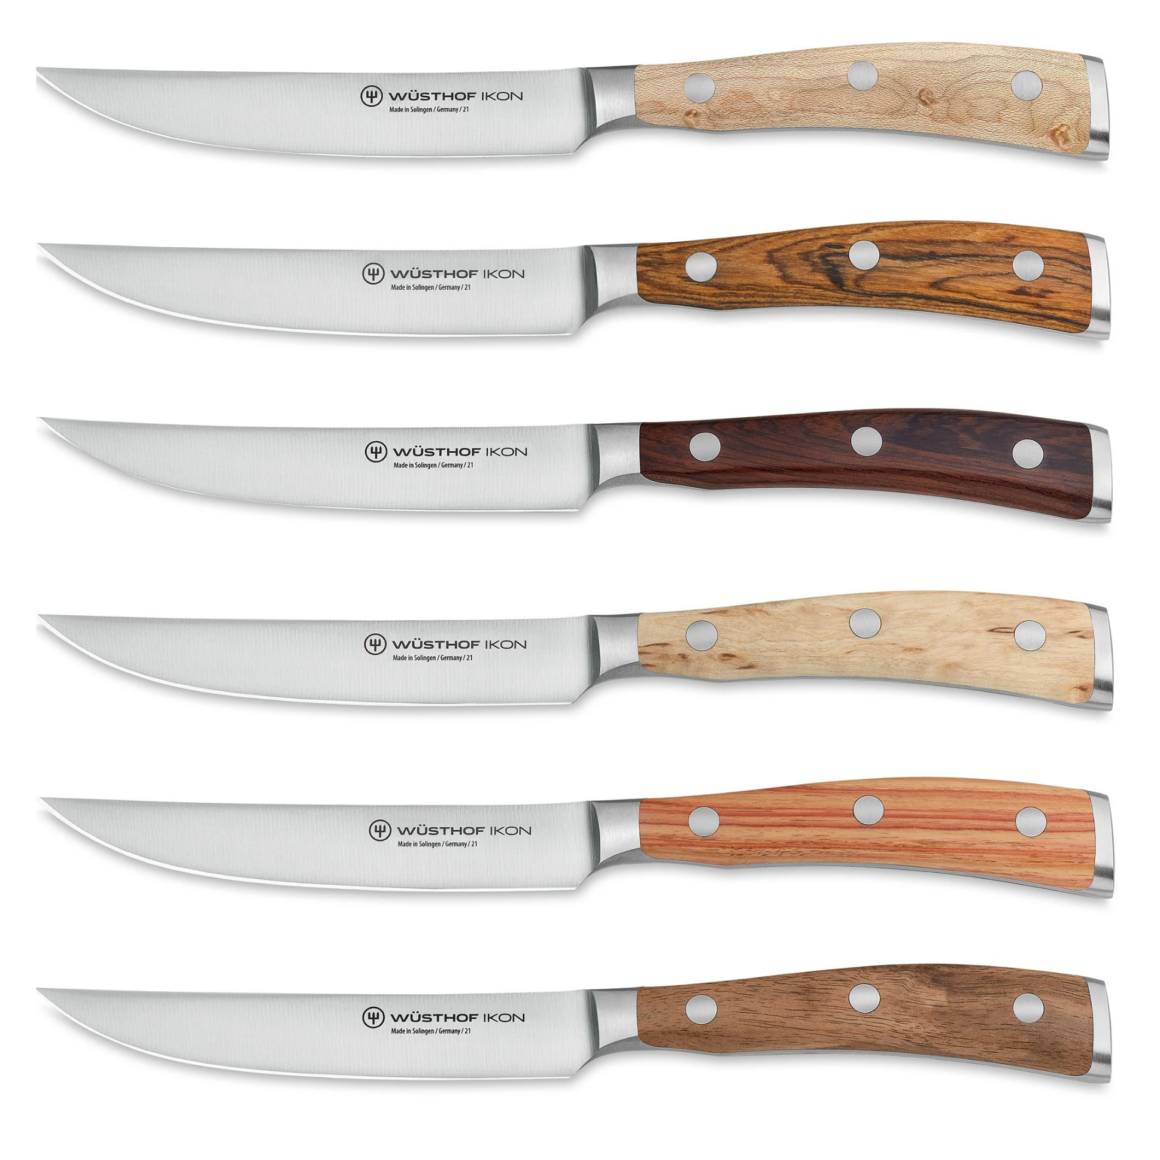 Bedste Premium Steakknive fra Wüsthof IKON serie - knivsæt med 6 knive